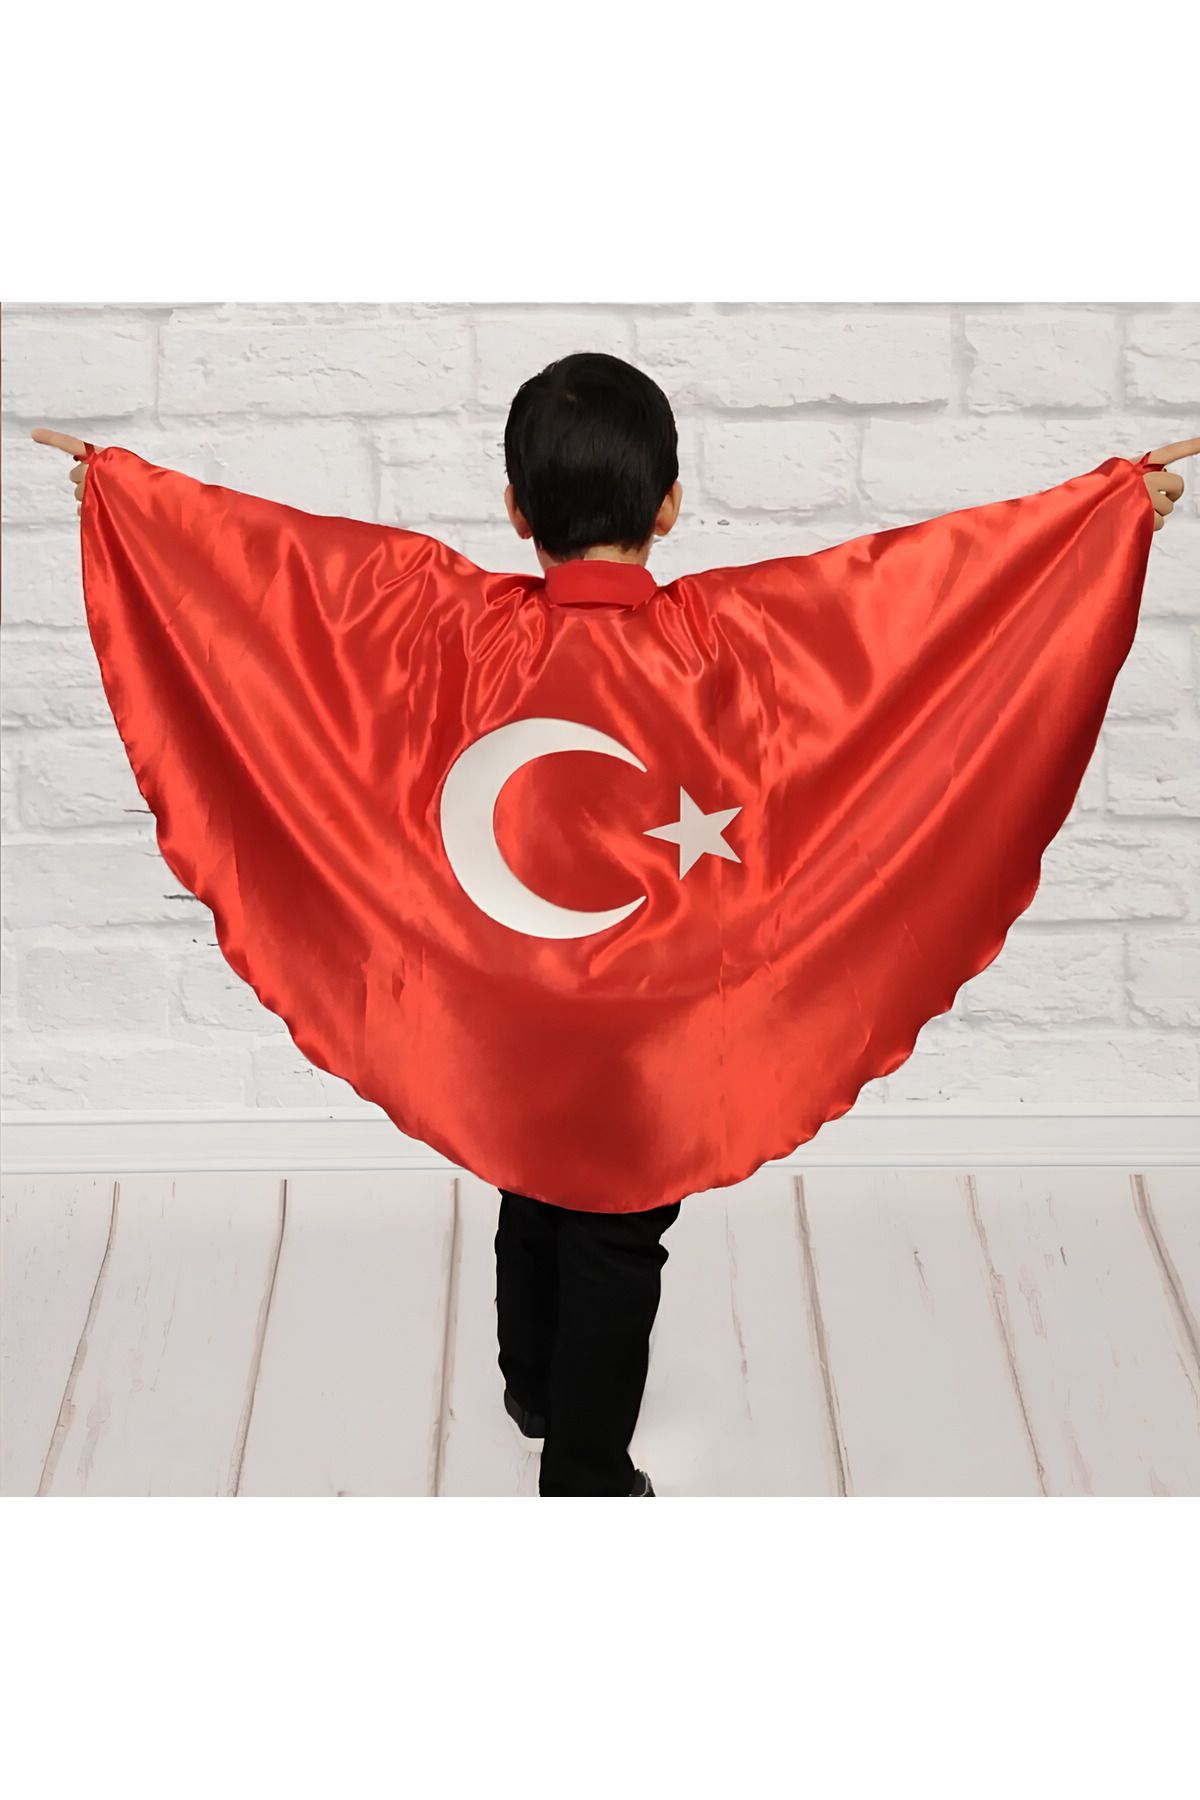 SEDİRLİ Türk Bayrağı Pelerin Gösteri Kostümü Kız-Erkek Ay Yıldız Bayraklı 23 nisan 2-6 yaş (M),7-12 yaş (L)